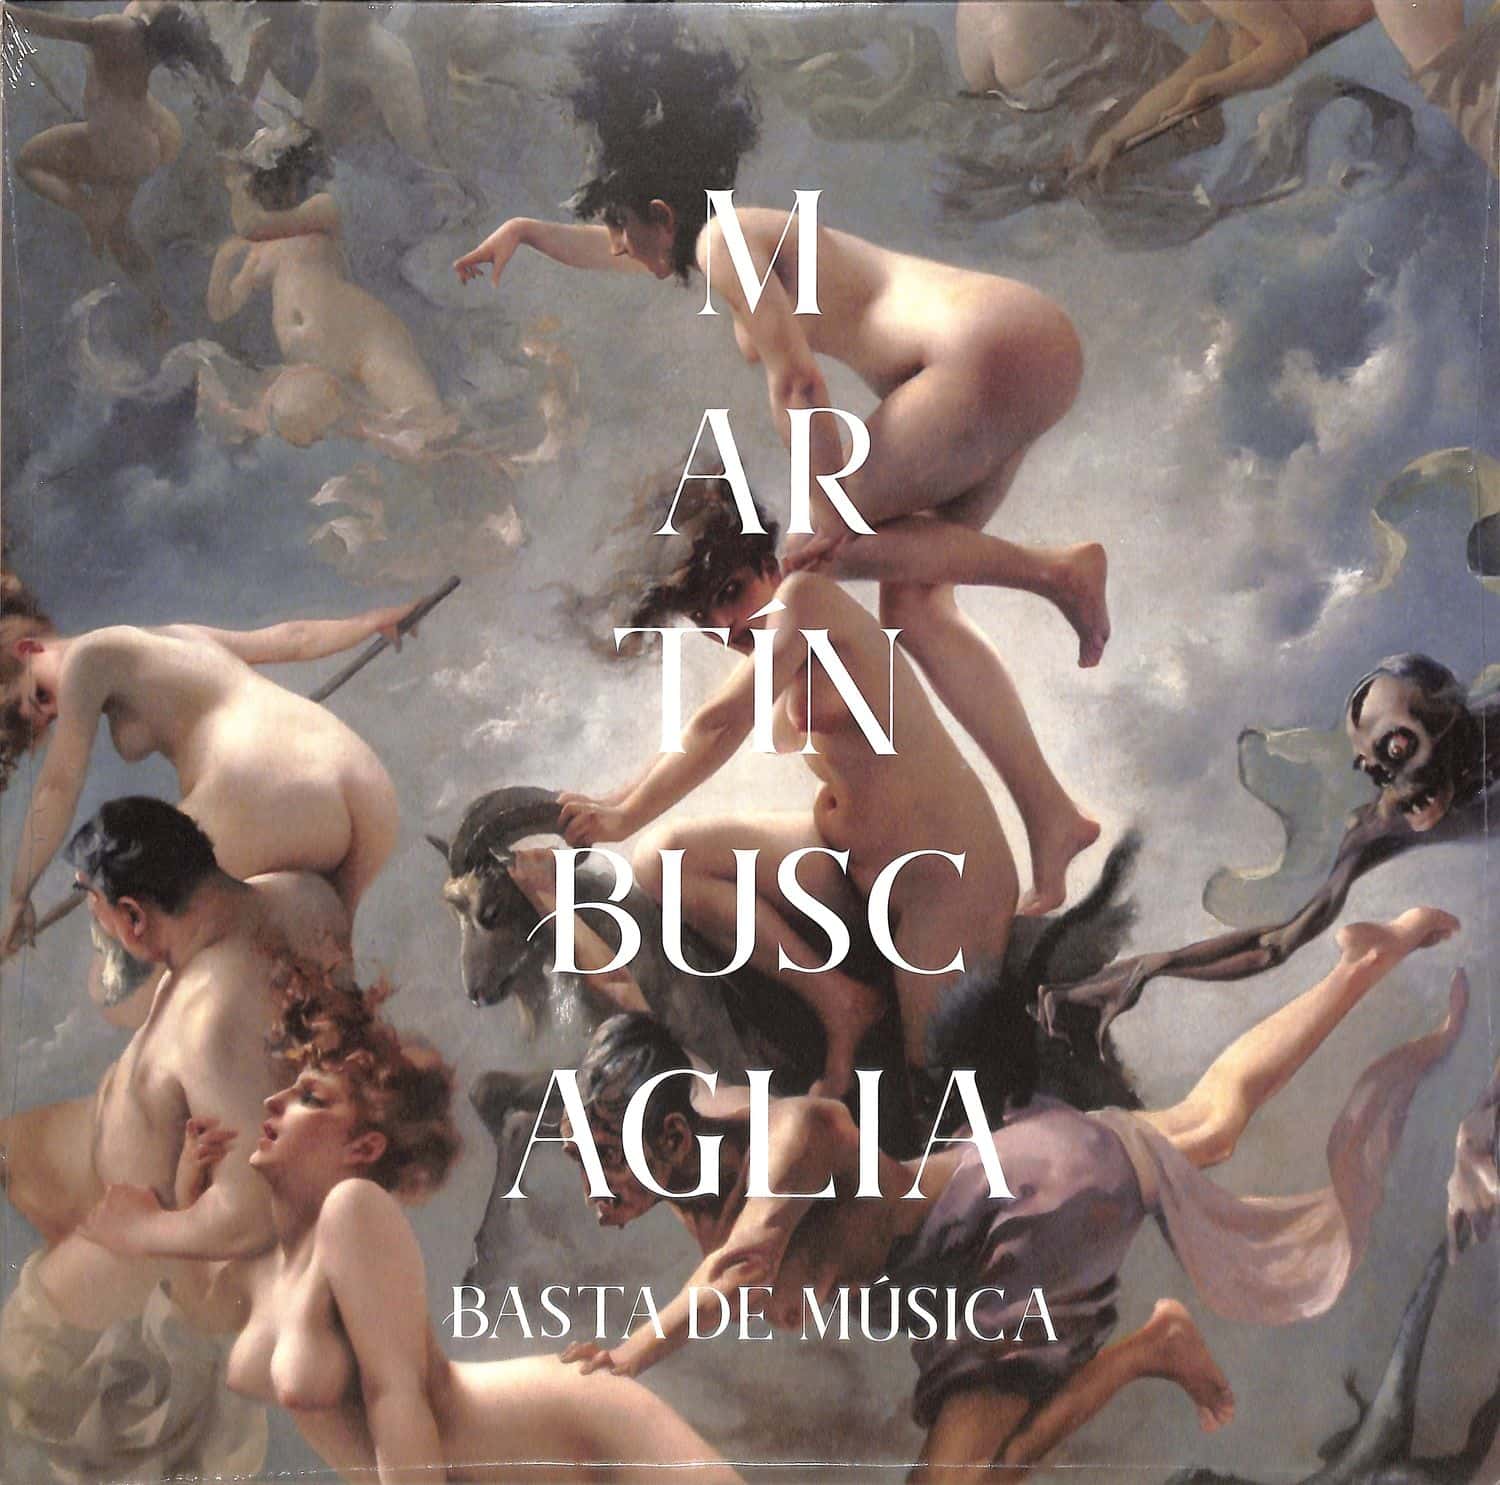 Martin Buscaglia - BASTA DE MUSICA 